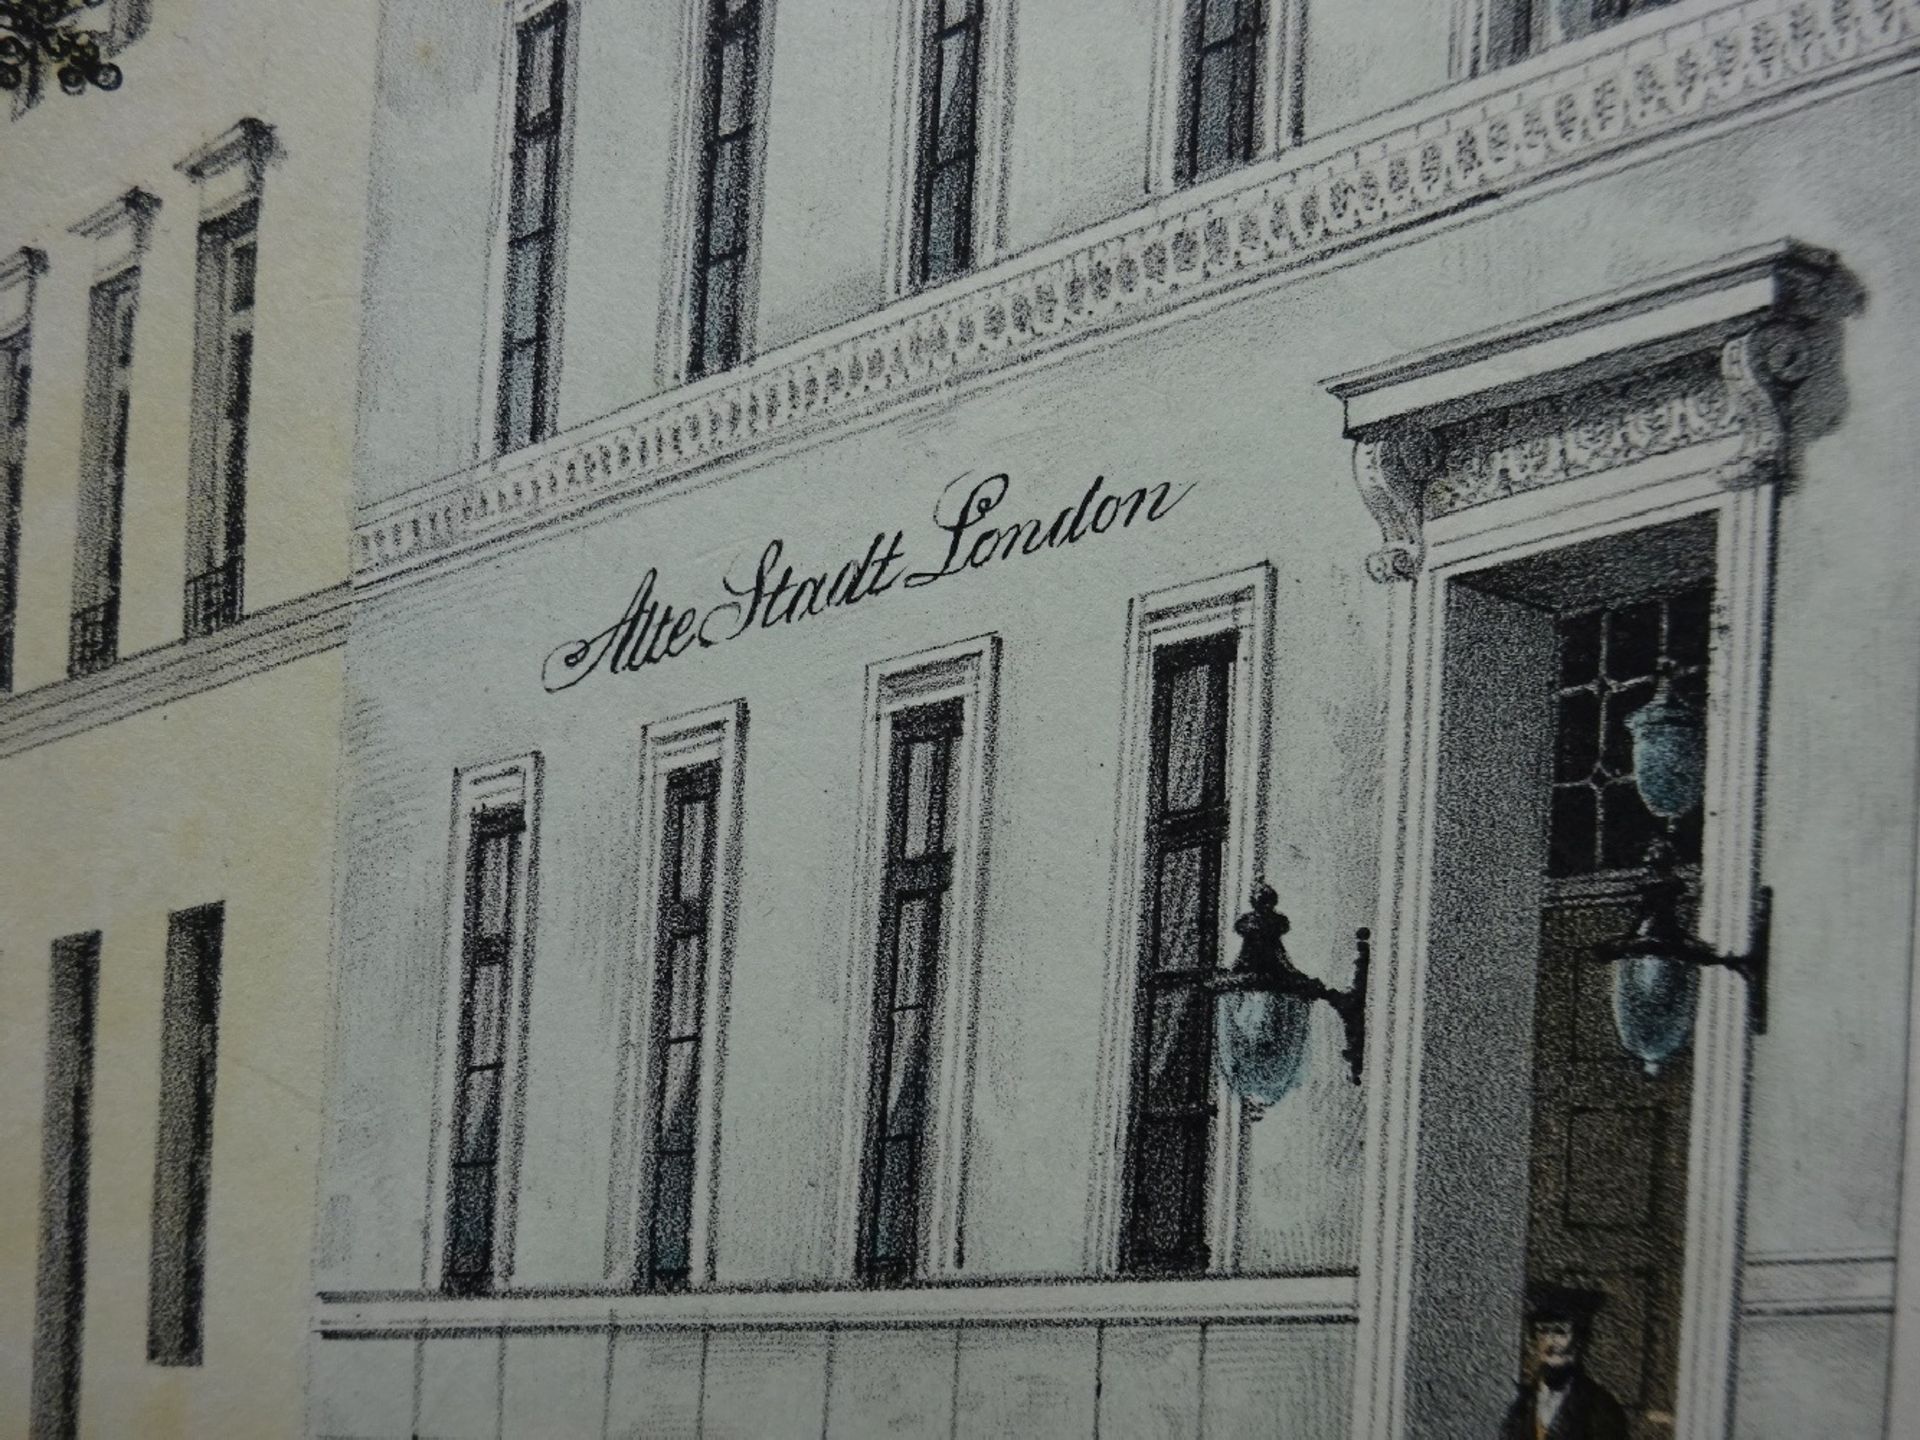 Suhr - Hotel zur Alten Stadt London - Image 6 of 6